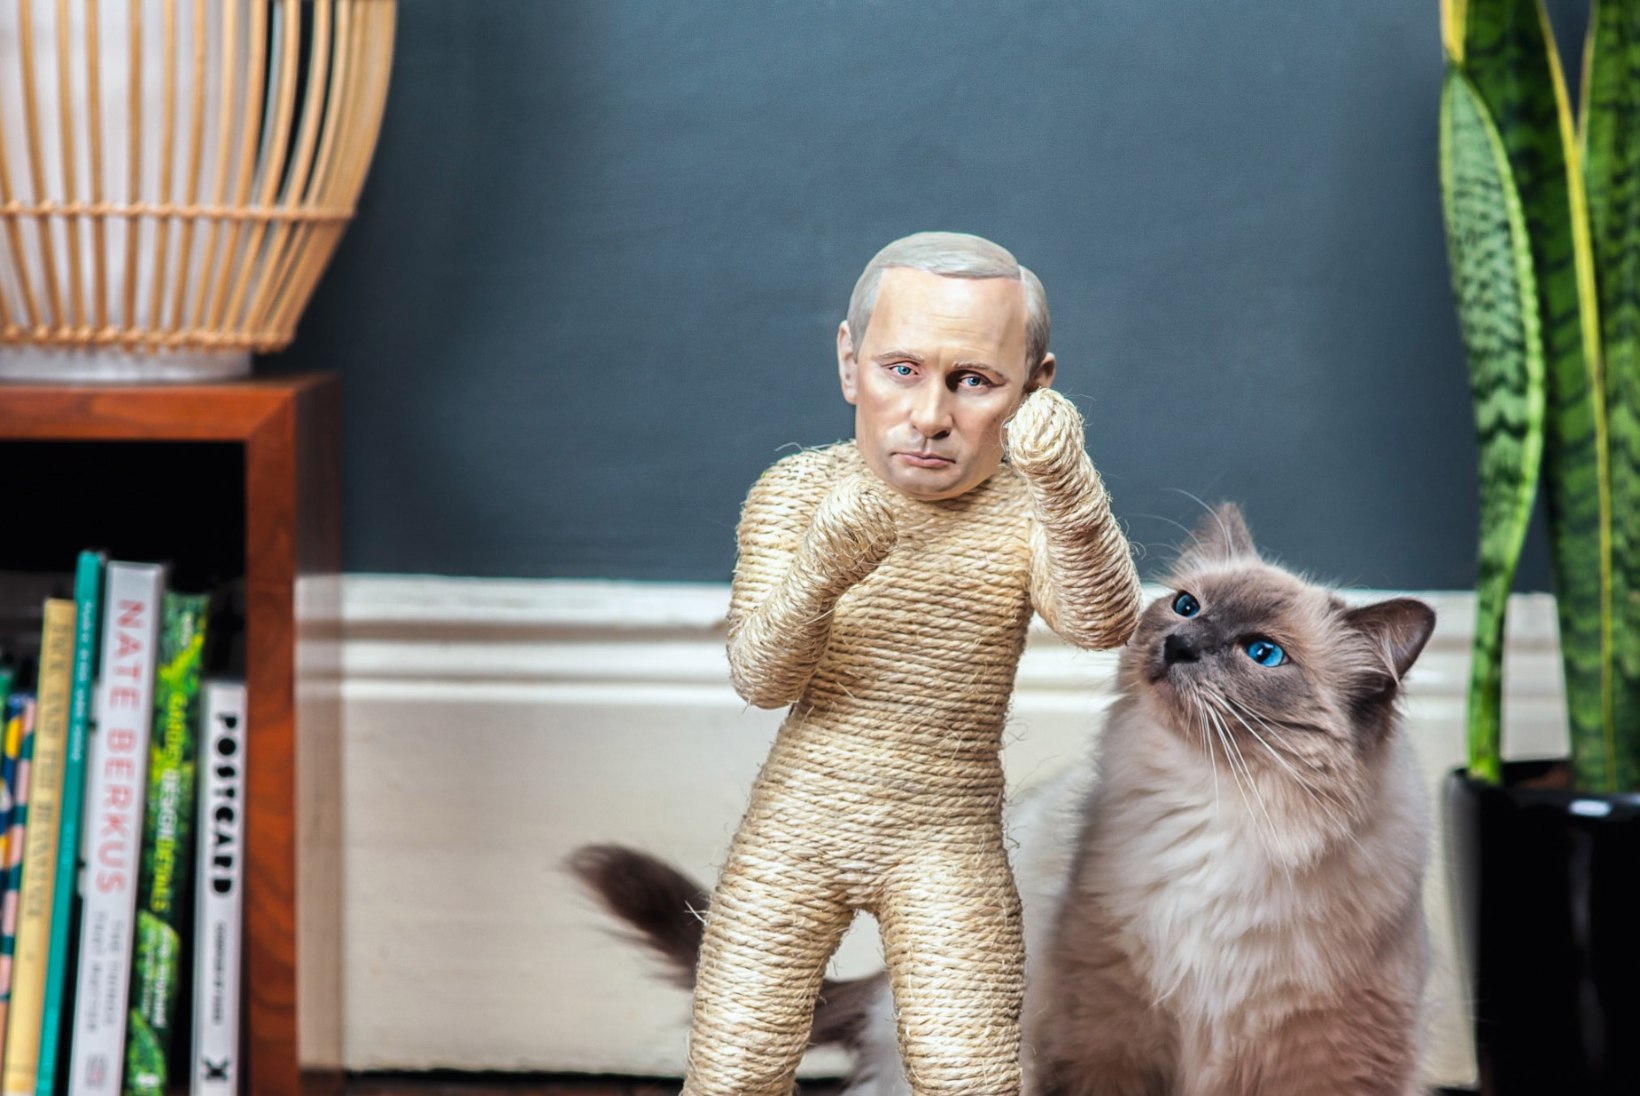 FOTOD: Putinist sai kasside kraapimispuu